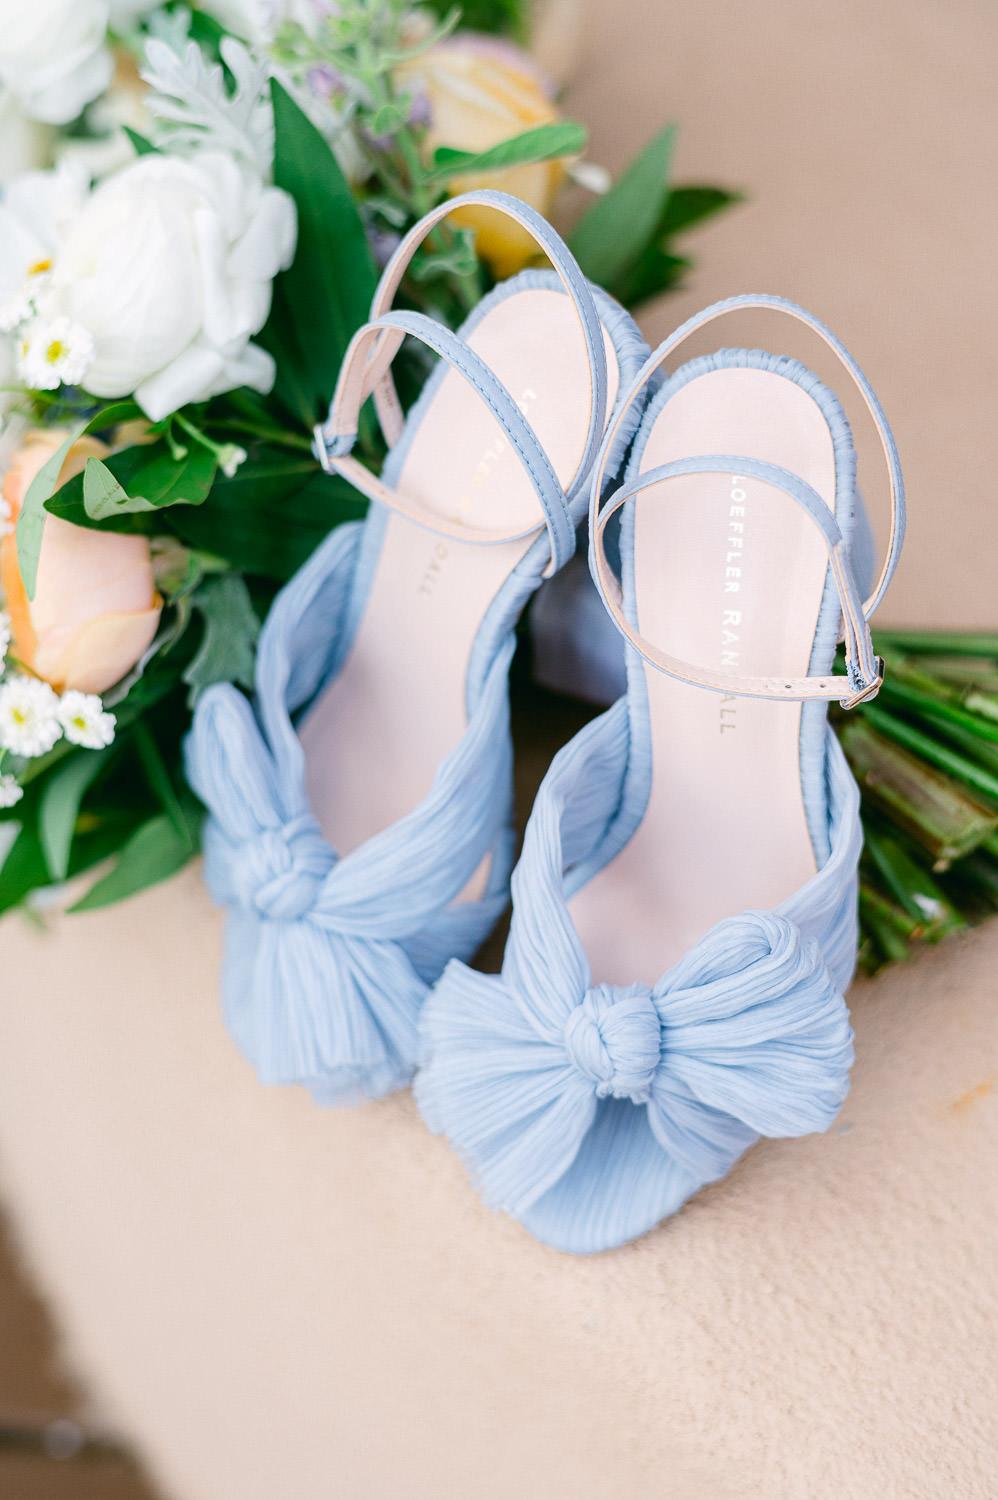 Blue Loeffler Randall wedding shoes next to a bouquet